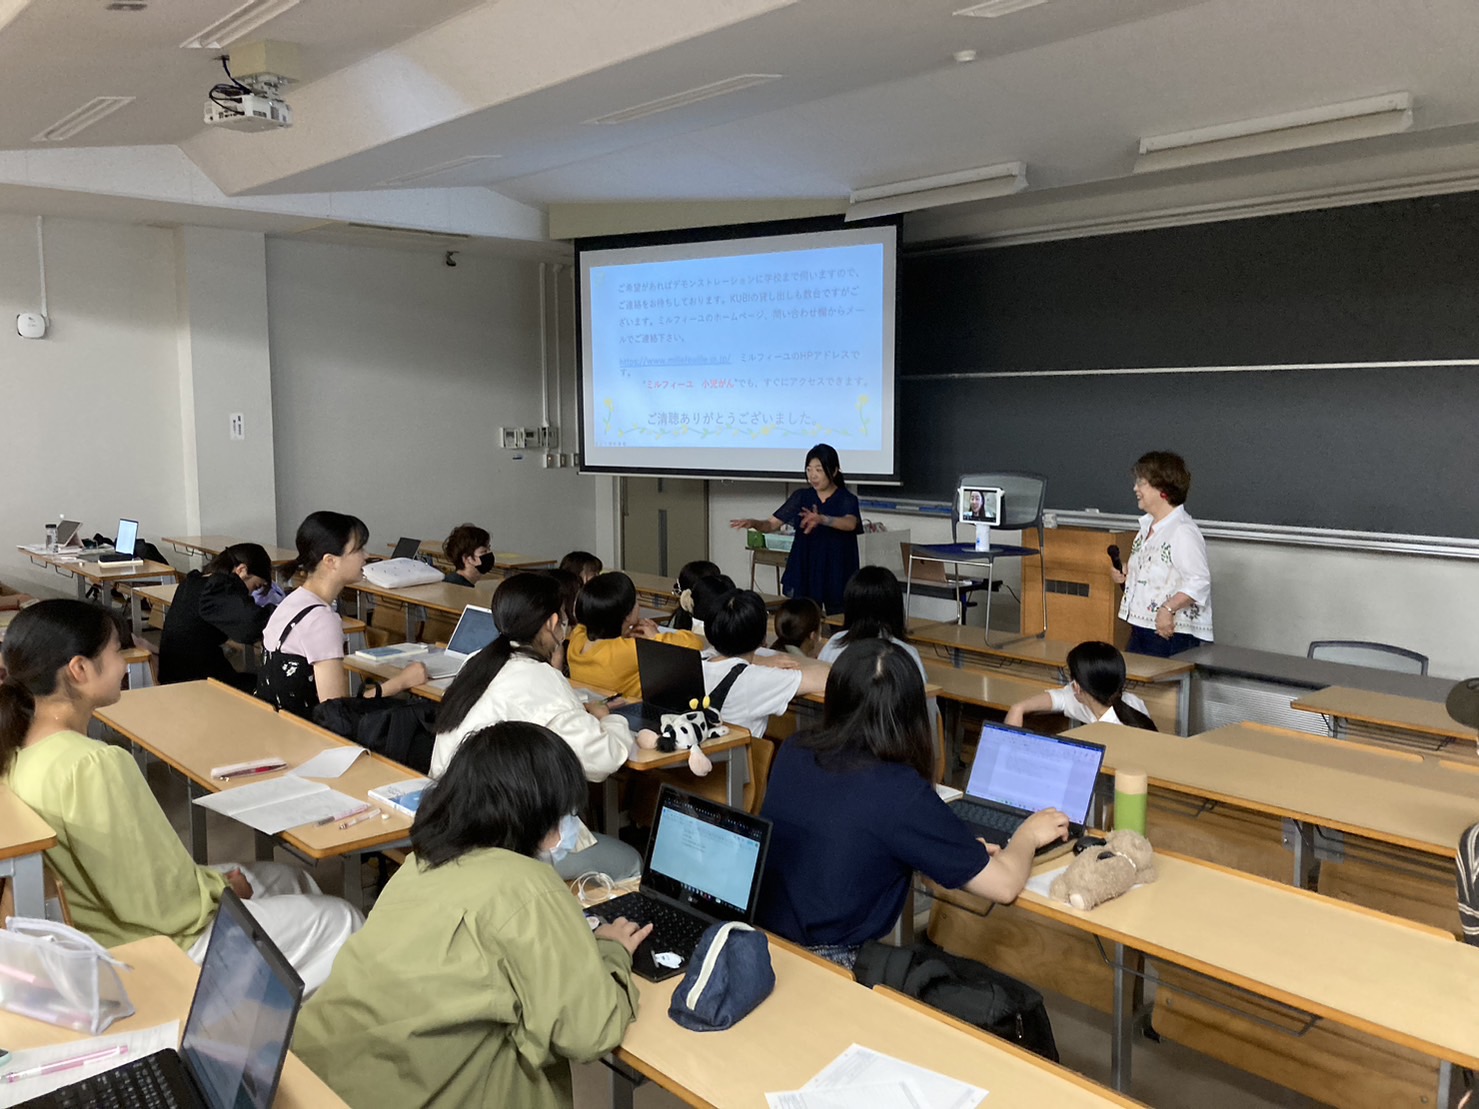 6月21日 千葉大学教育学部でのkubiについての講演